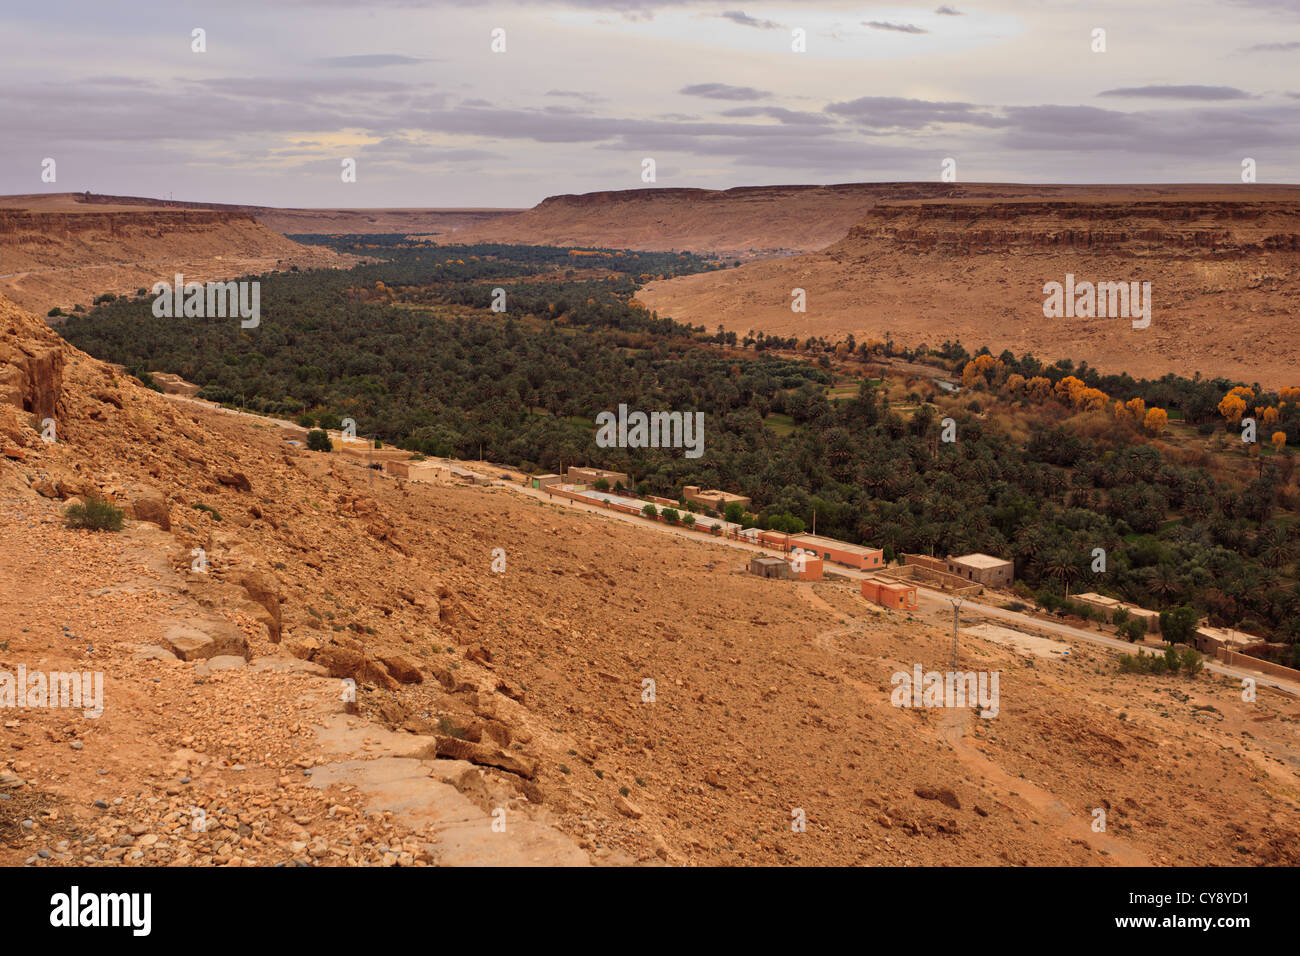 Vista panoramica di una valle fertile e oasi nel deserto saraha, Marocco, Africa Foto Stock